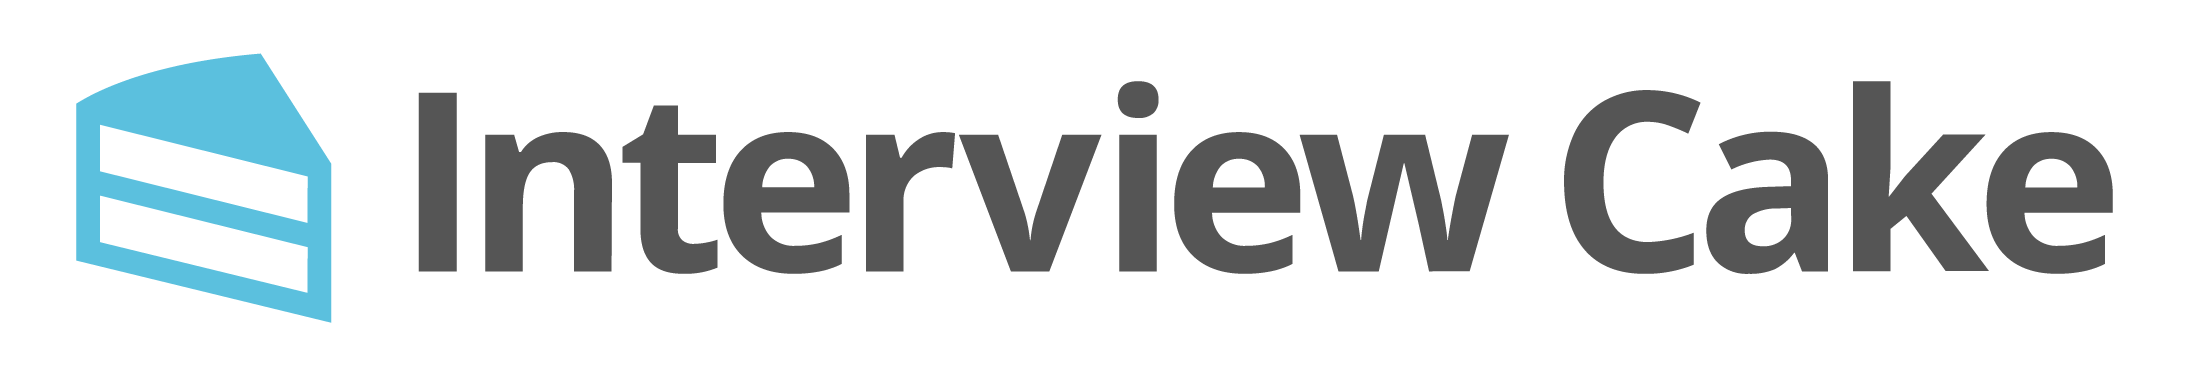 InterviewCake.com Logo